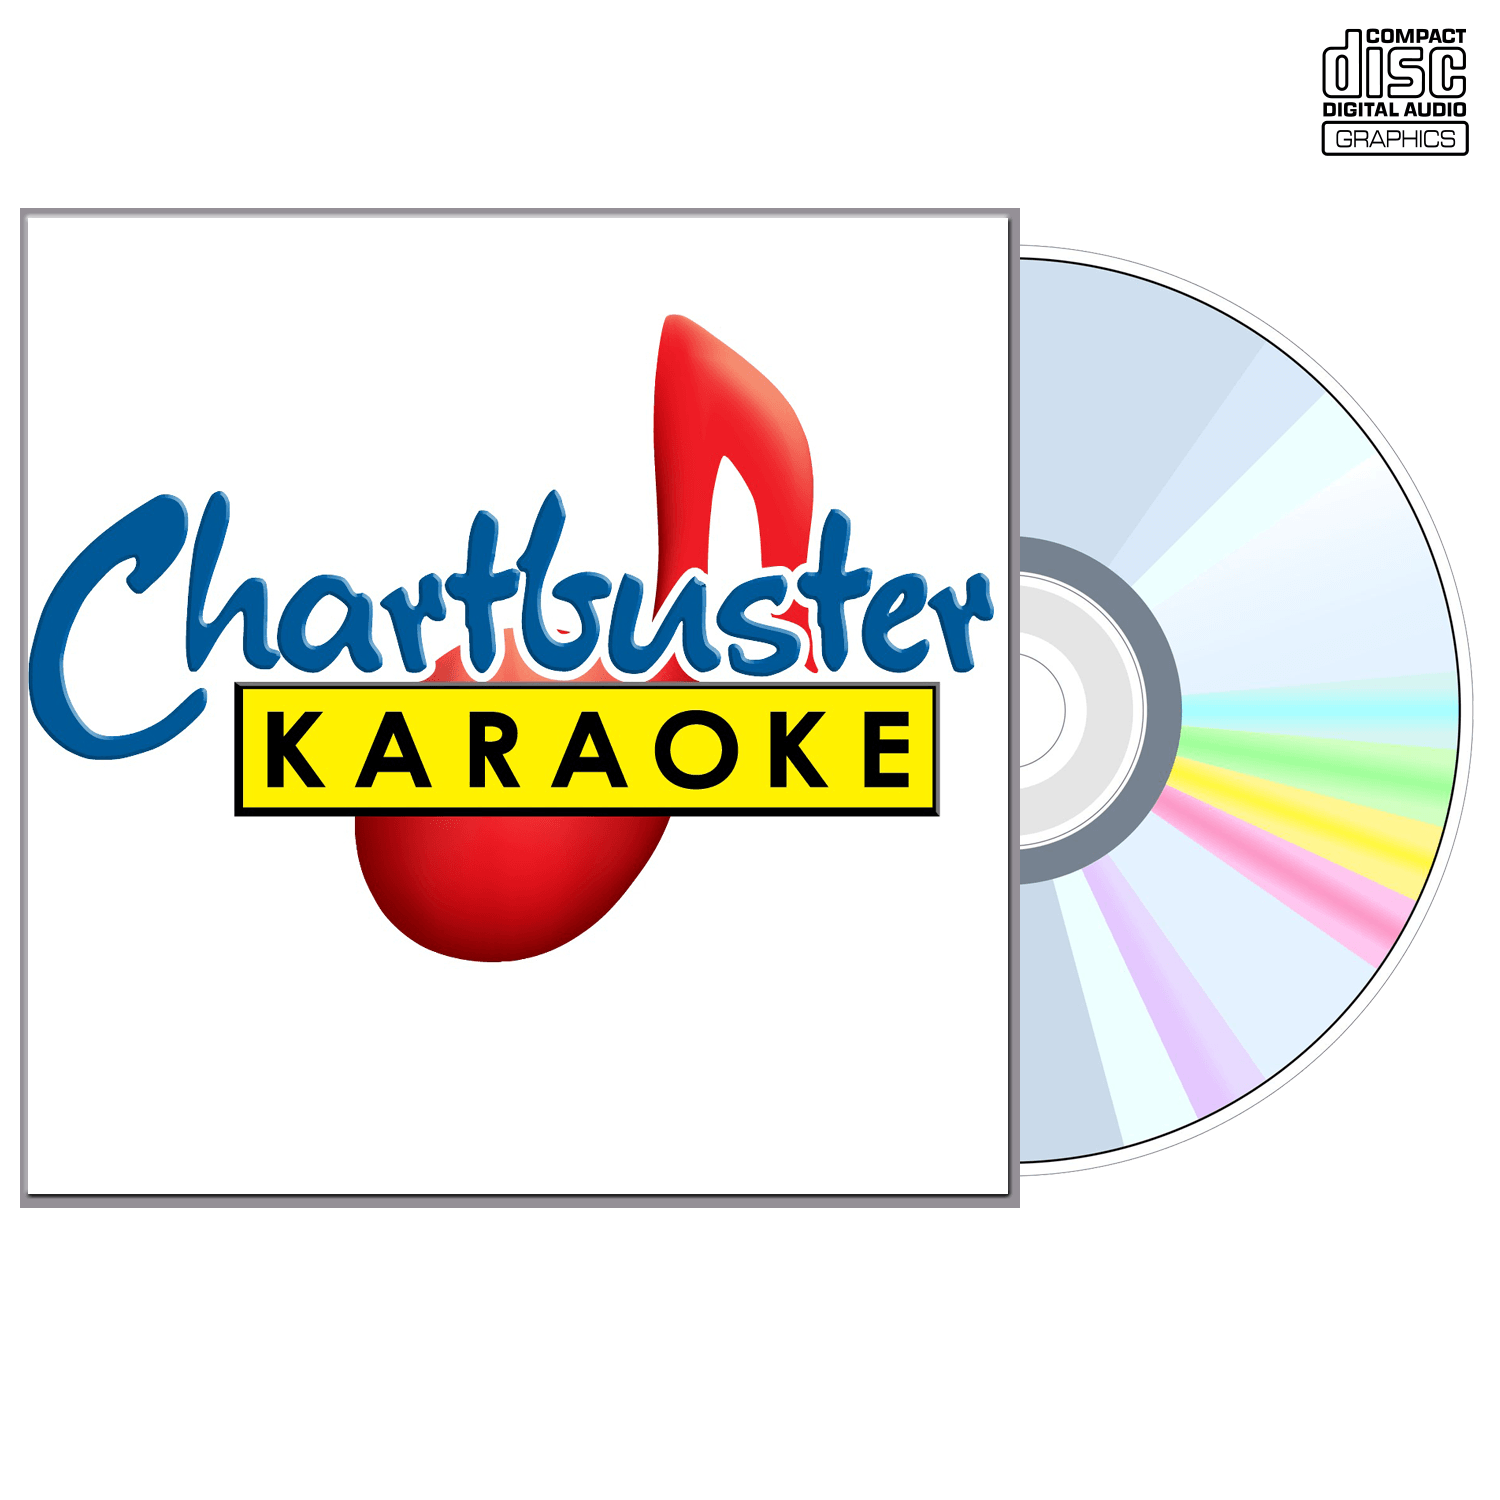 Trace Adkins Vol 1 - CD+G - Chartbuster Karaoke - Karaoke Home Entertainment